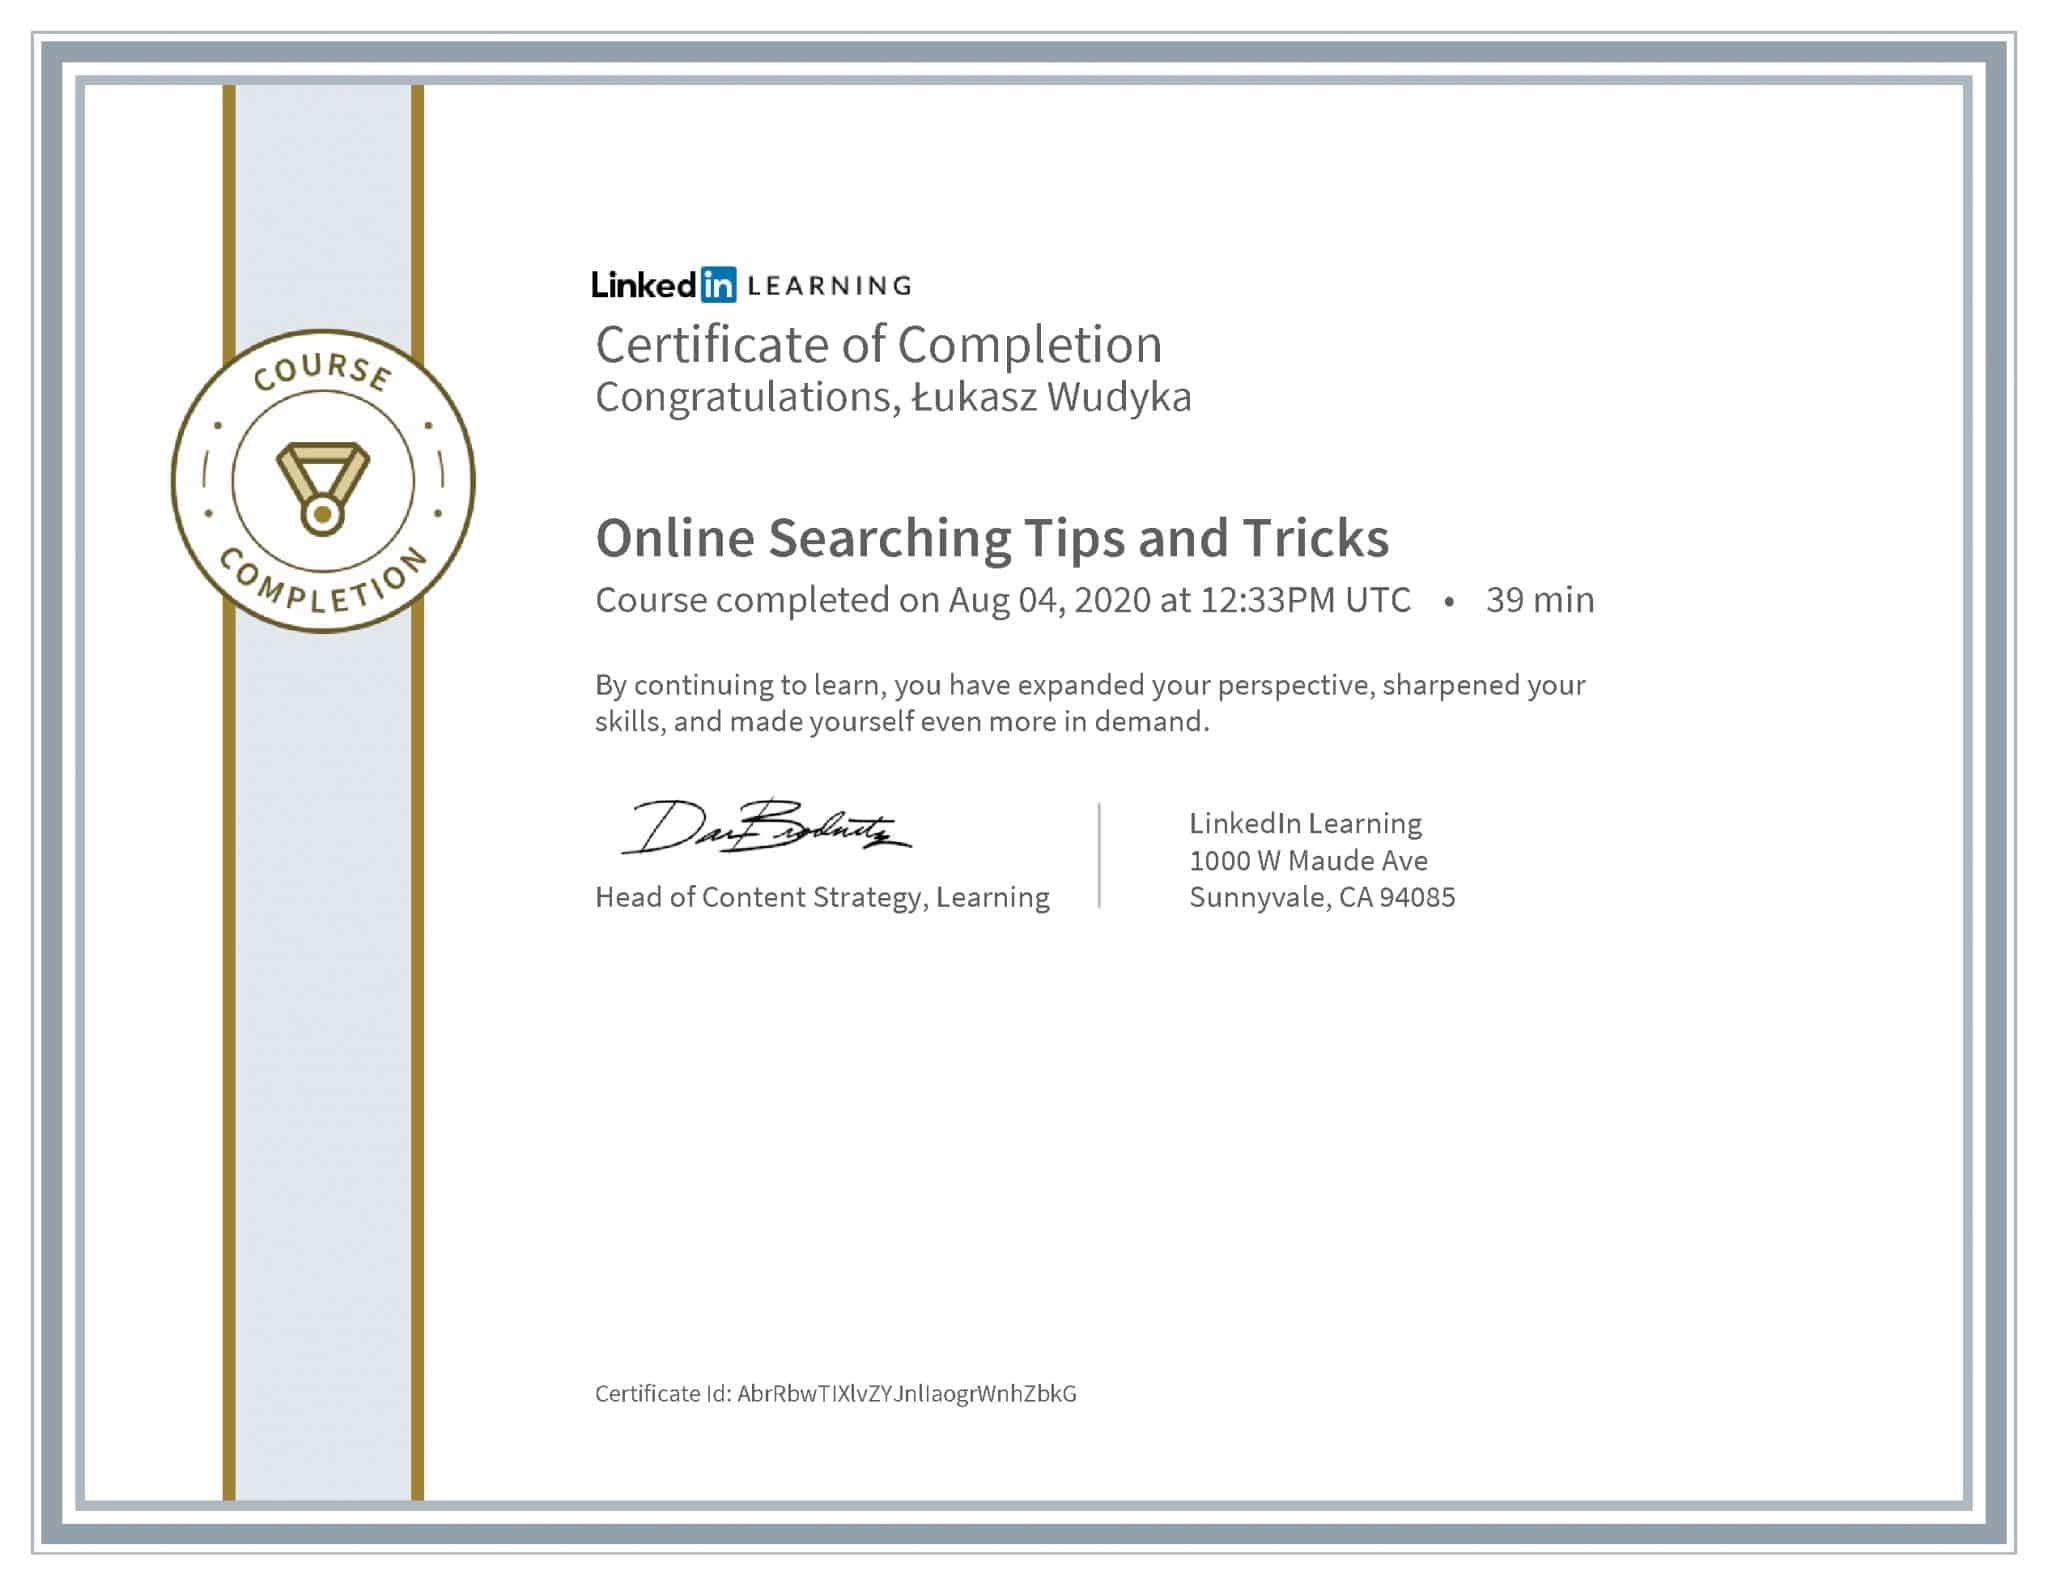 Łukasz Wudyka certyfikat LinkedIn Online Searching Tips and Tricks